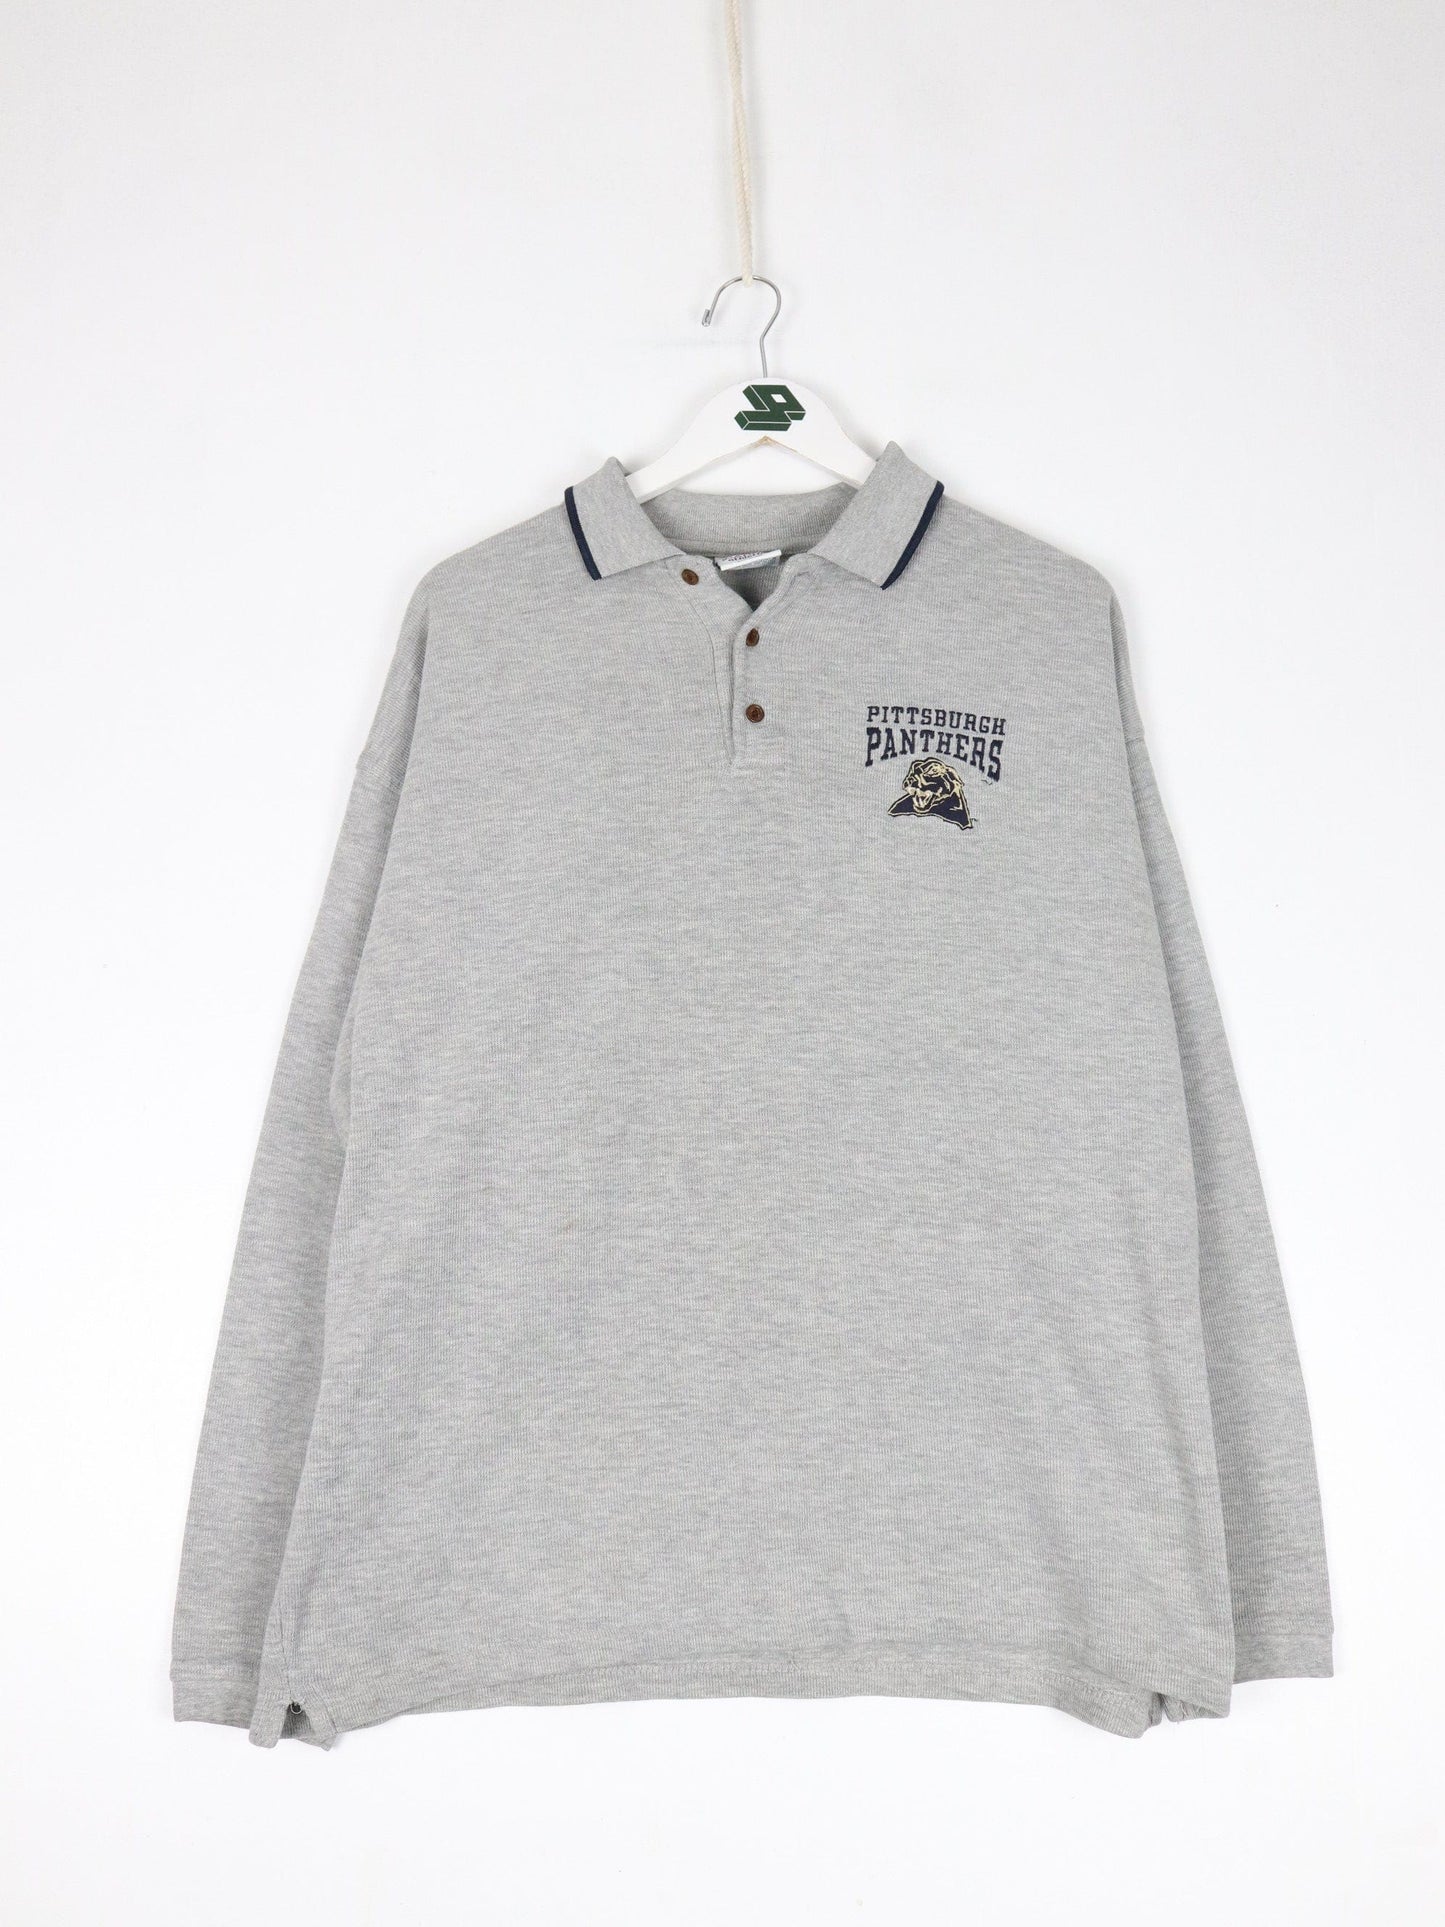 Collegiate Sweatshirts & Hoodies Vintage Pittsburgh Panthers Sweatshirt Mens Large Grey Collar College